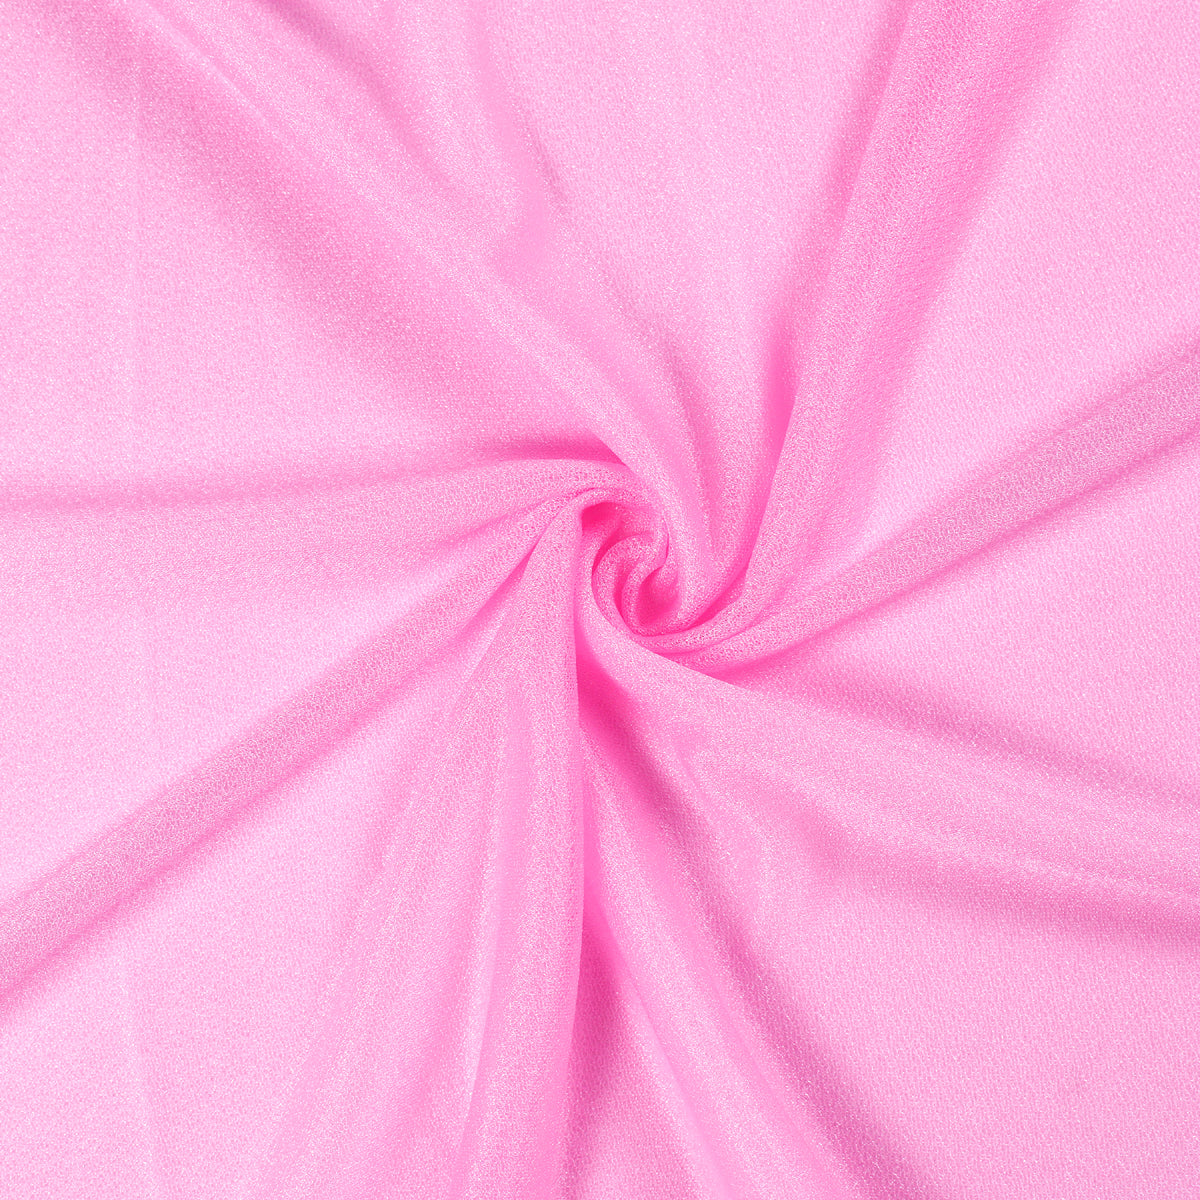 Bubblegum Pink,35877b4a-406f-4091-b449-df520346fbf8